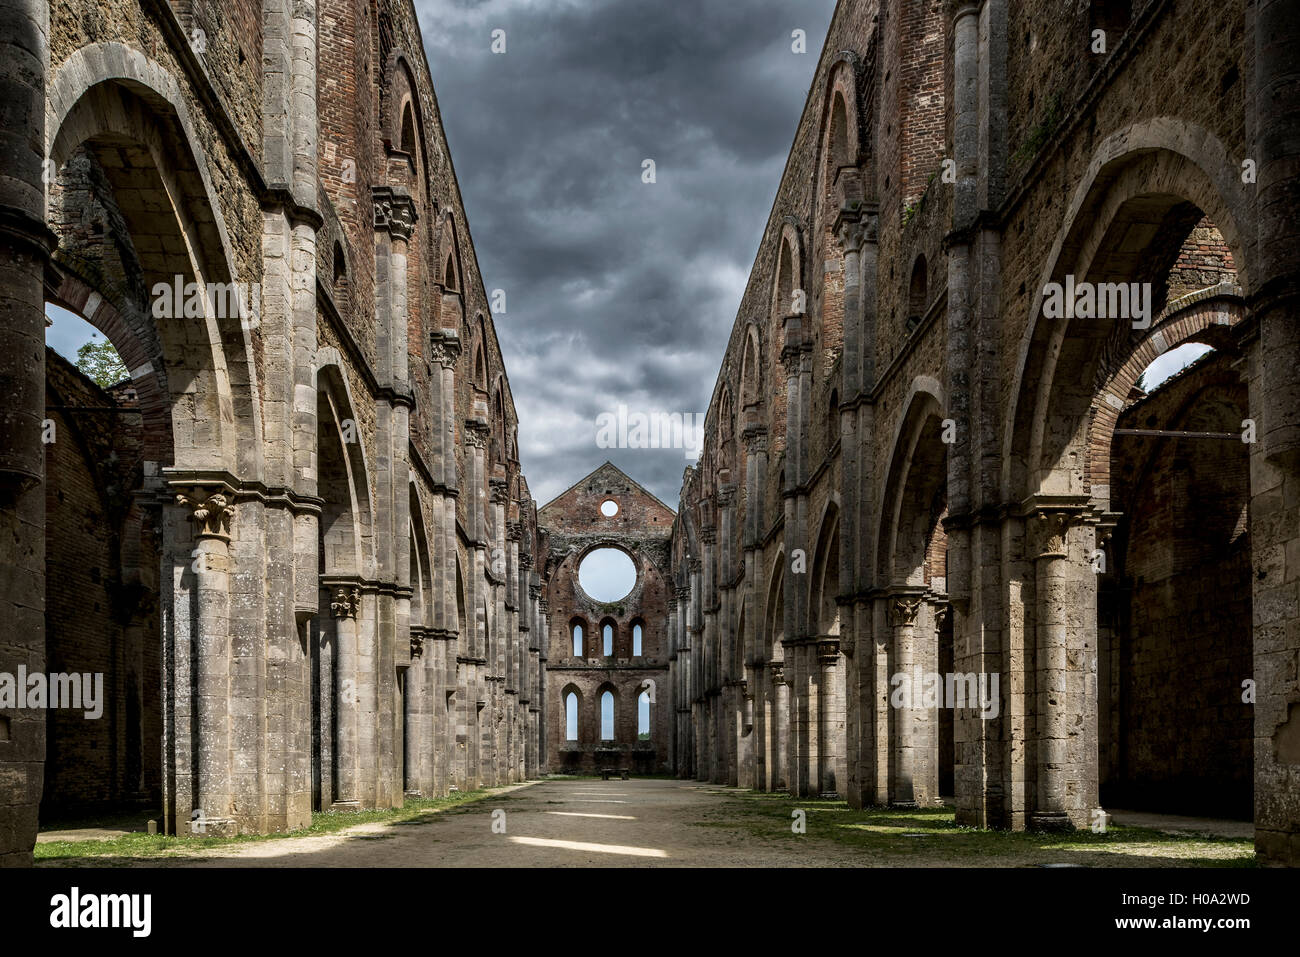 Ruins of the former Cistercian Abbey of San Galgano, Chiusdino, Tuscany, Italy Stock Photo